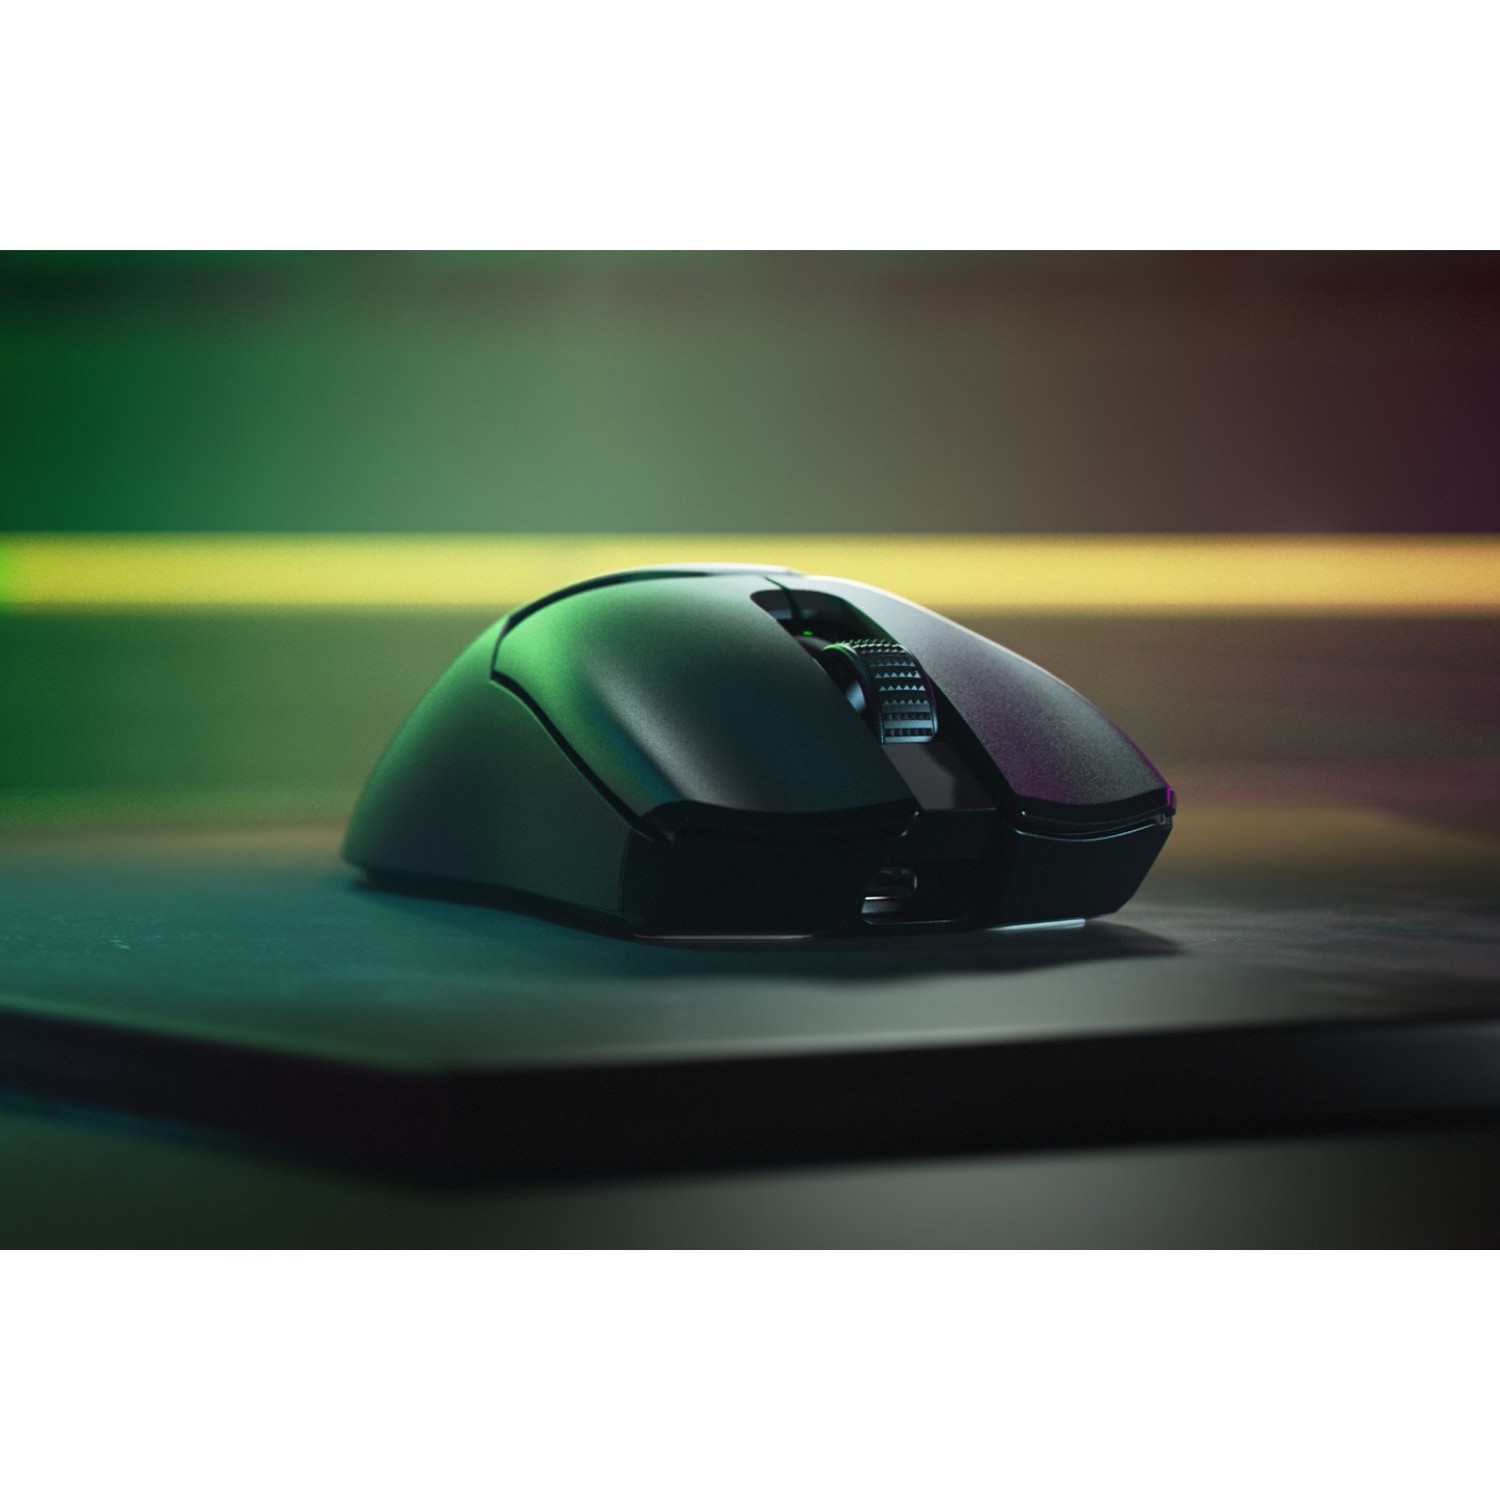 Razer Viper V2 Pro mouse